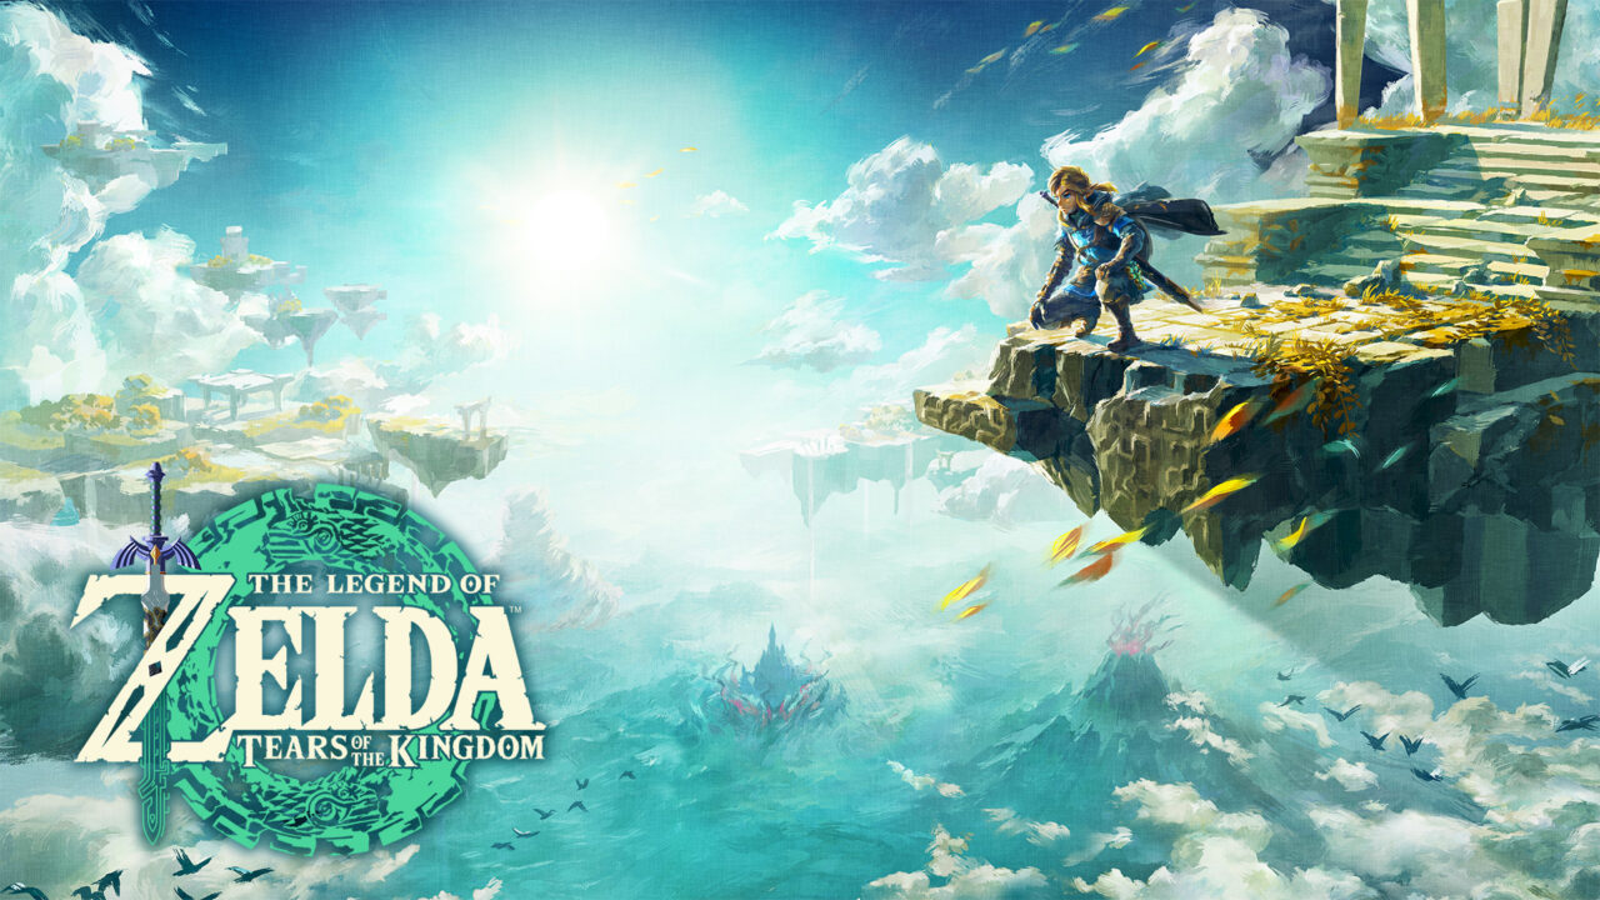 Resumo da semana em Jogos: Uncharted 4 e Zelda foram destaques